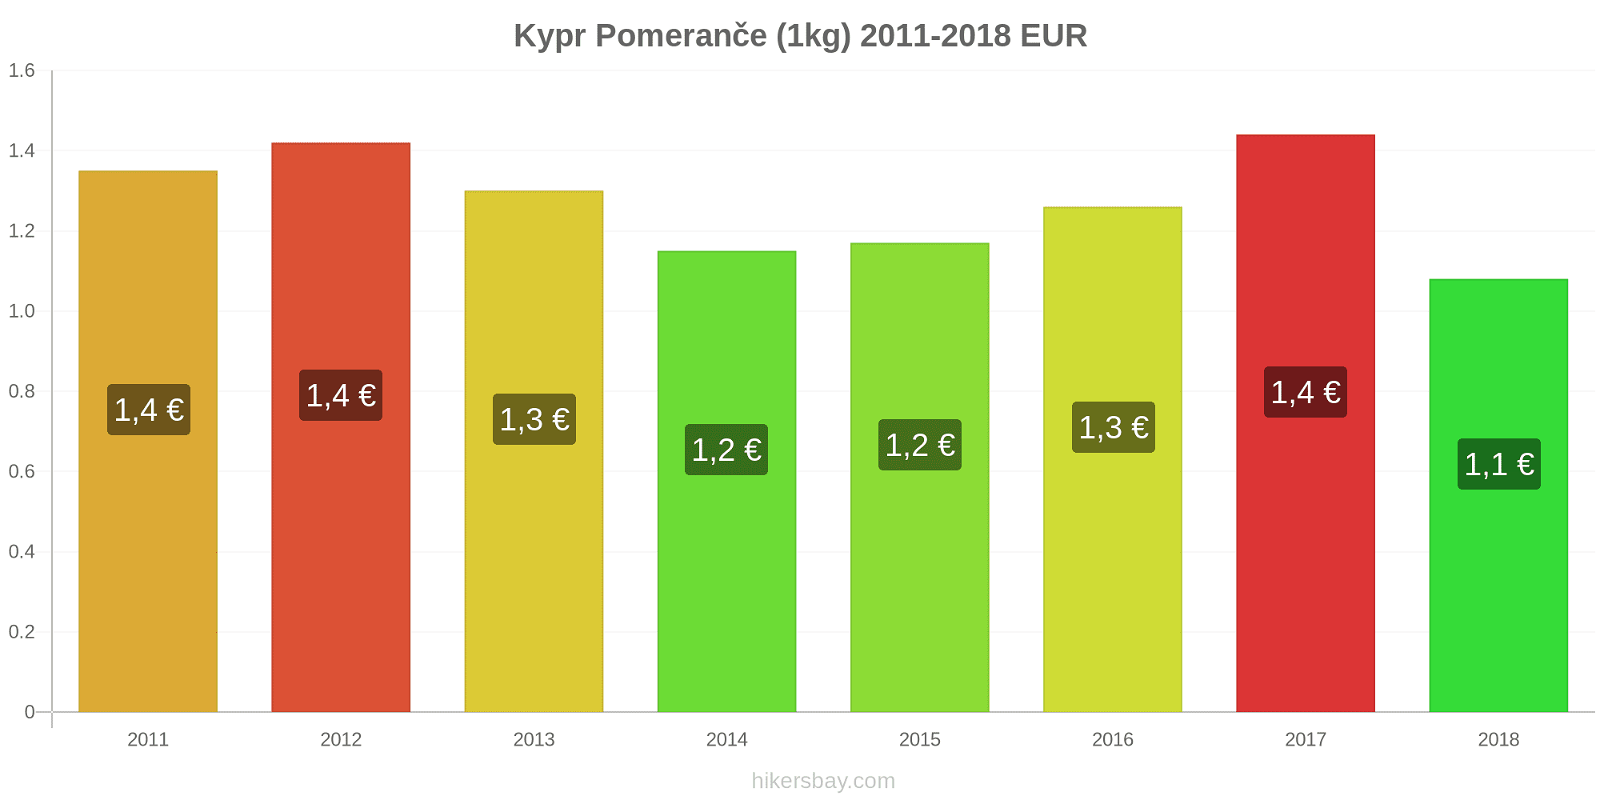 Kypr změny cen Pomeranče (1kg) hikersbay.com